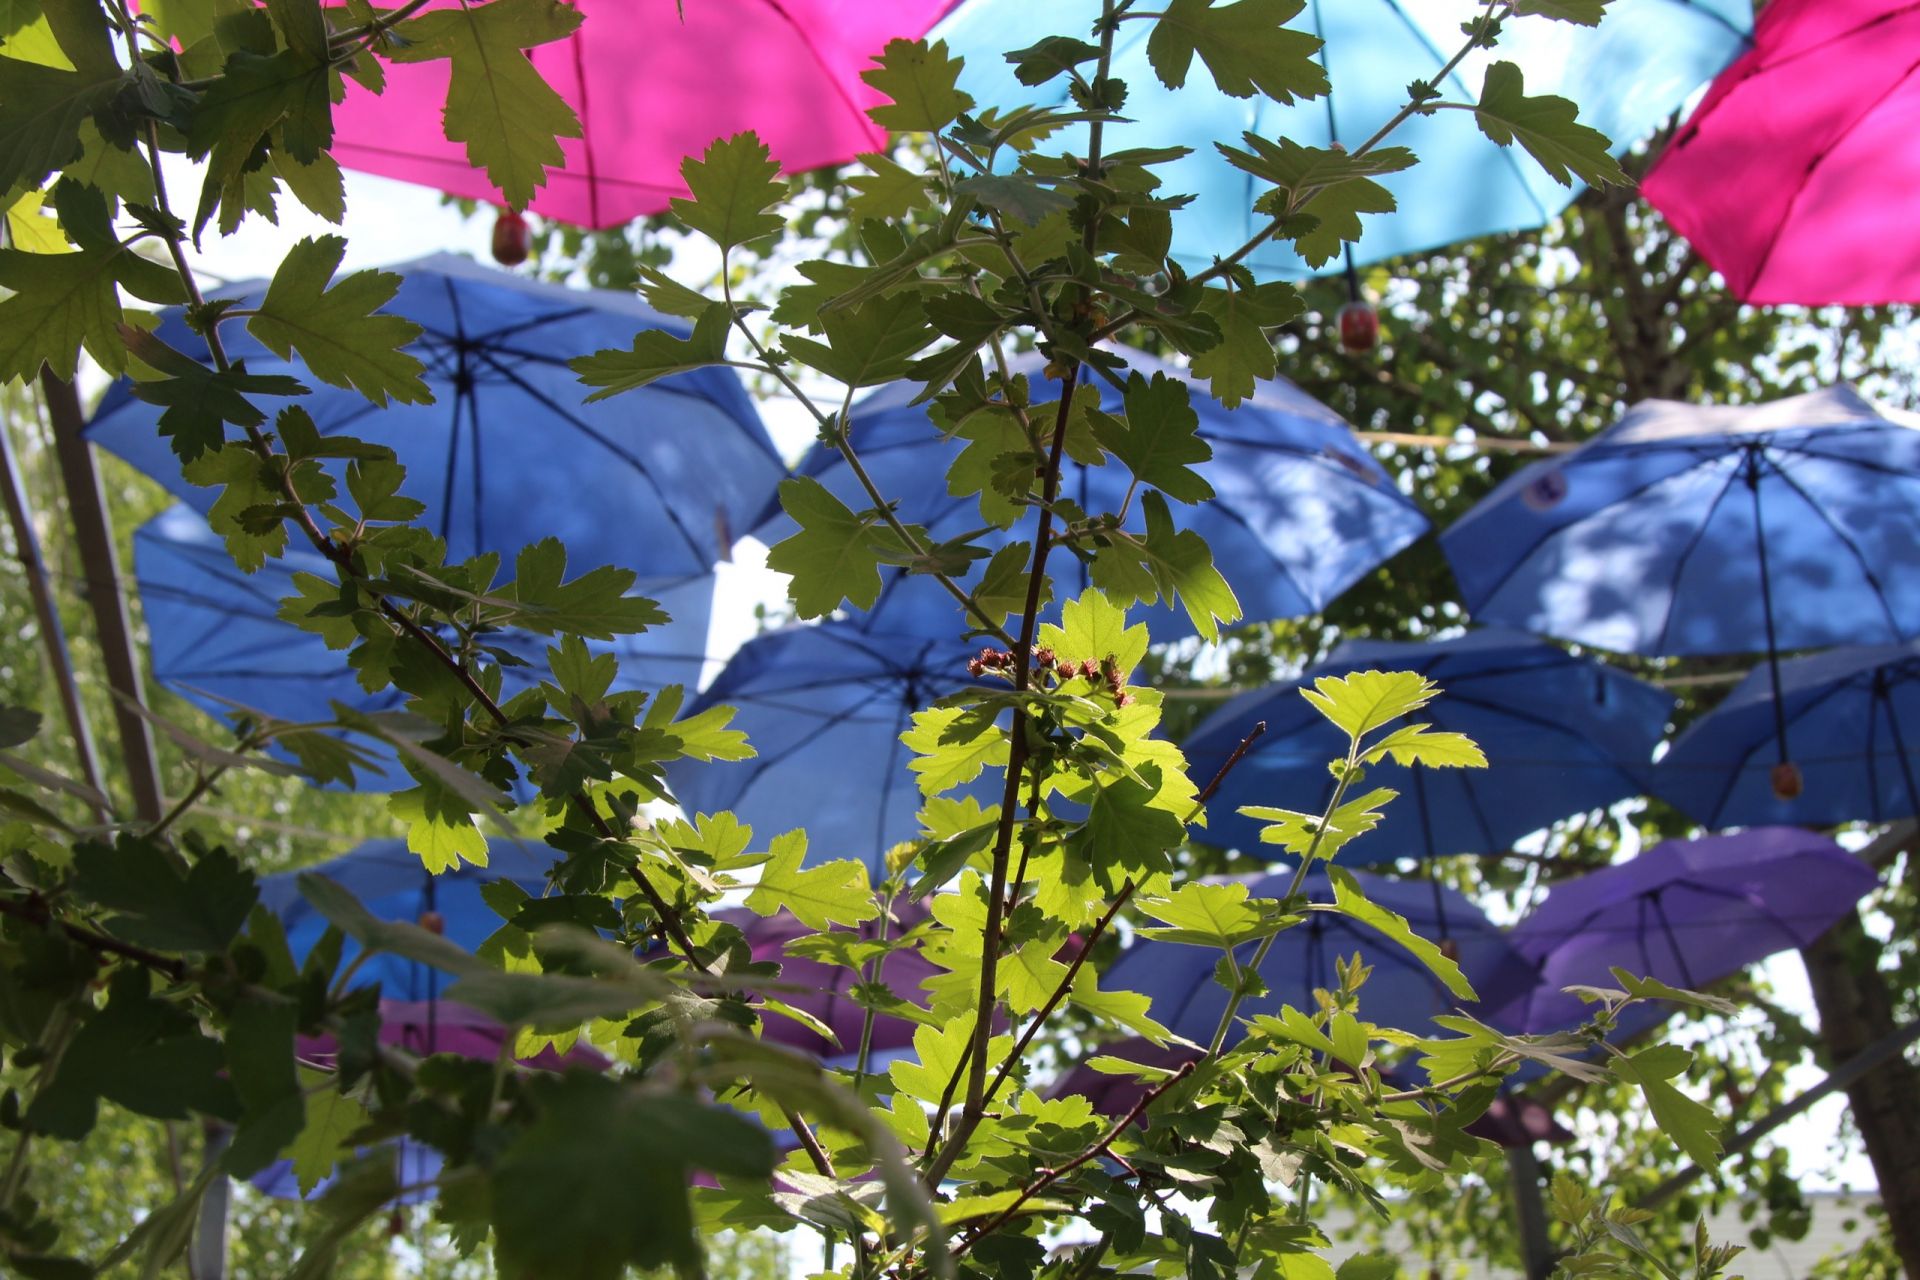 Фоторепортаж: в Менделеевске открыли арт-инсталляцию «Аллея парящих зонтиков»